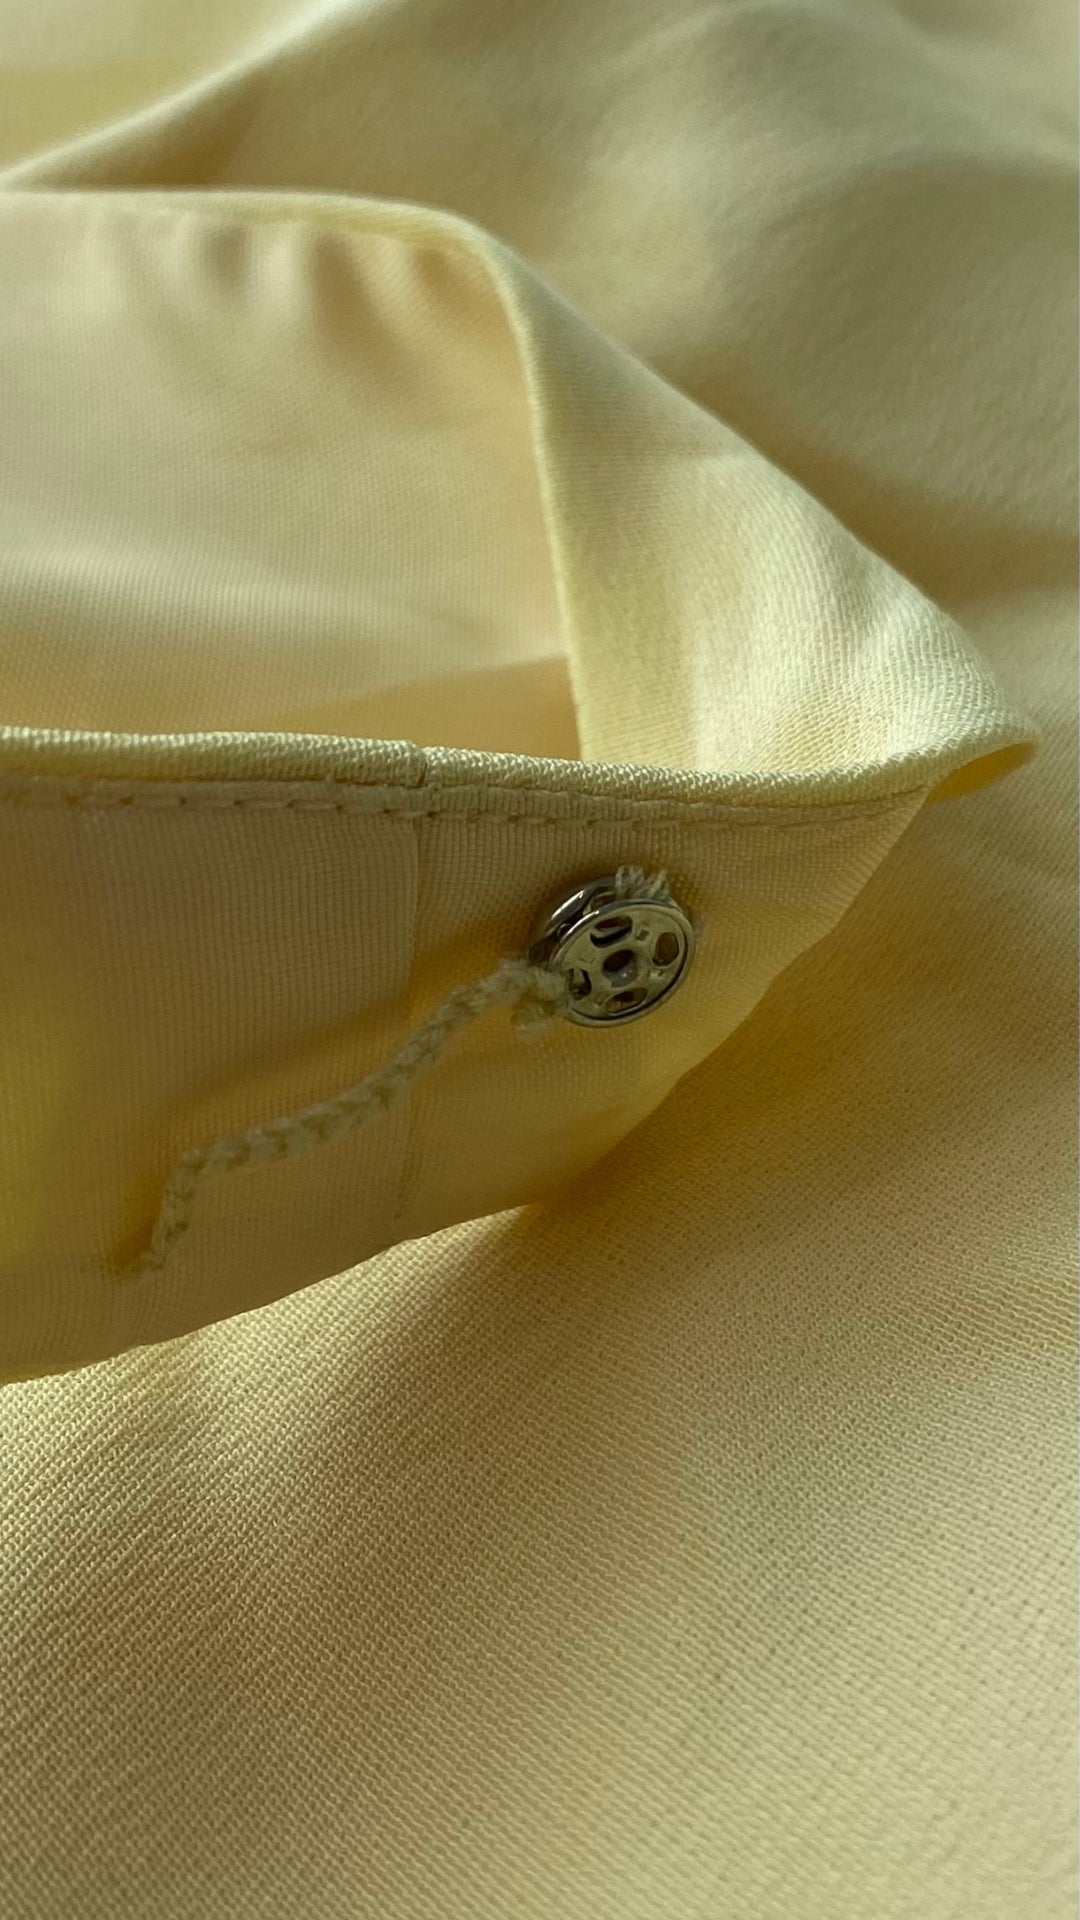 Camisole doublée en soie jaune doux Simon Chang, taille 16. Vue du bouton pression dans la bretelle pour maintenir la bretelle de soutien gorge en place.